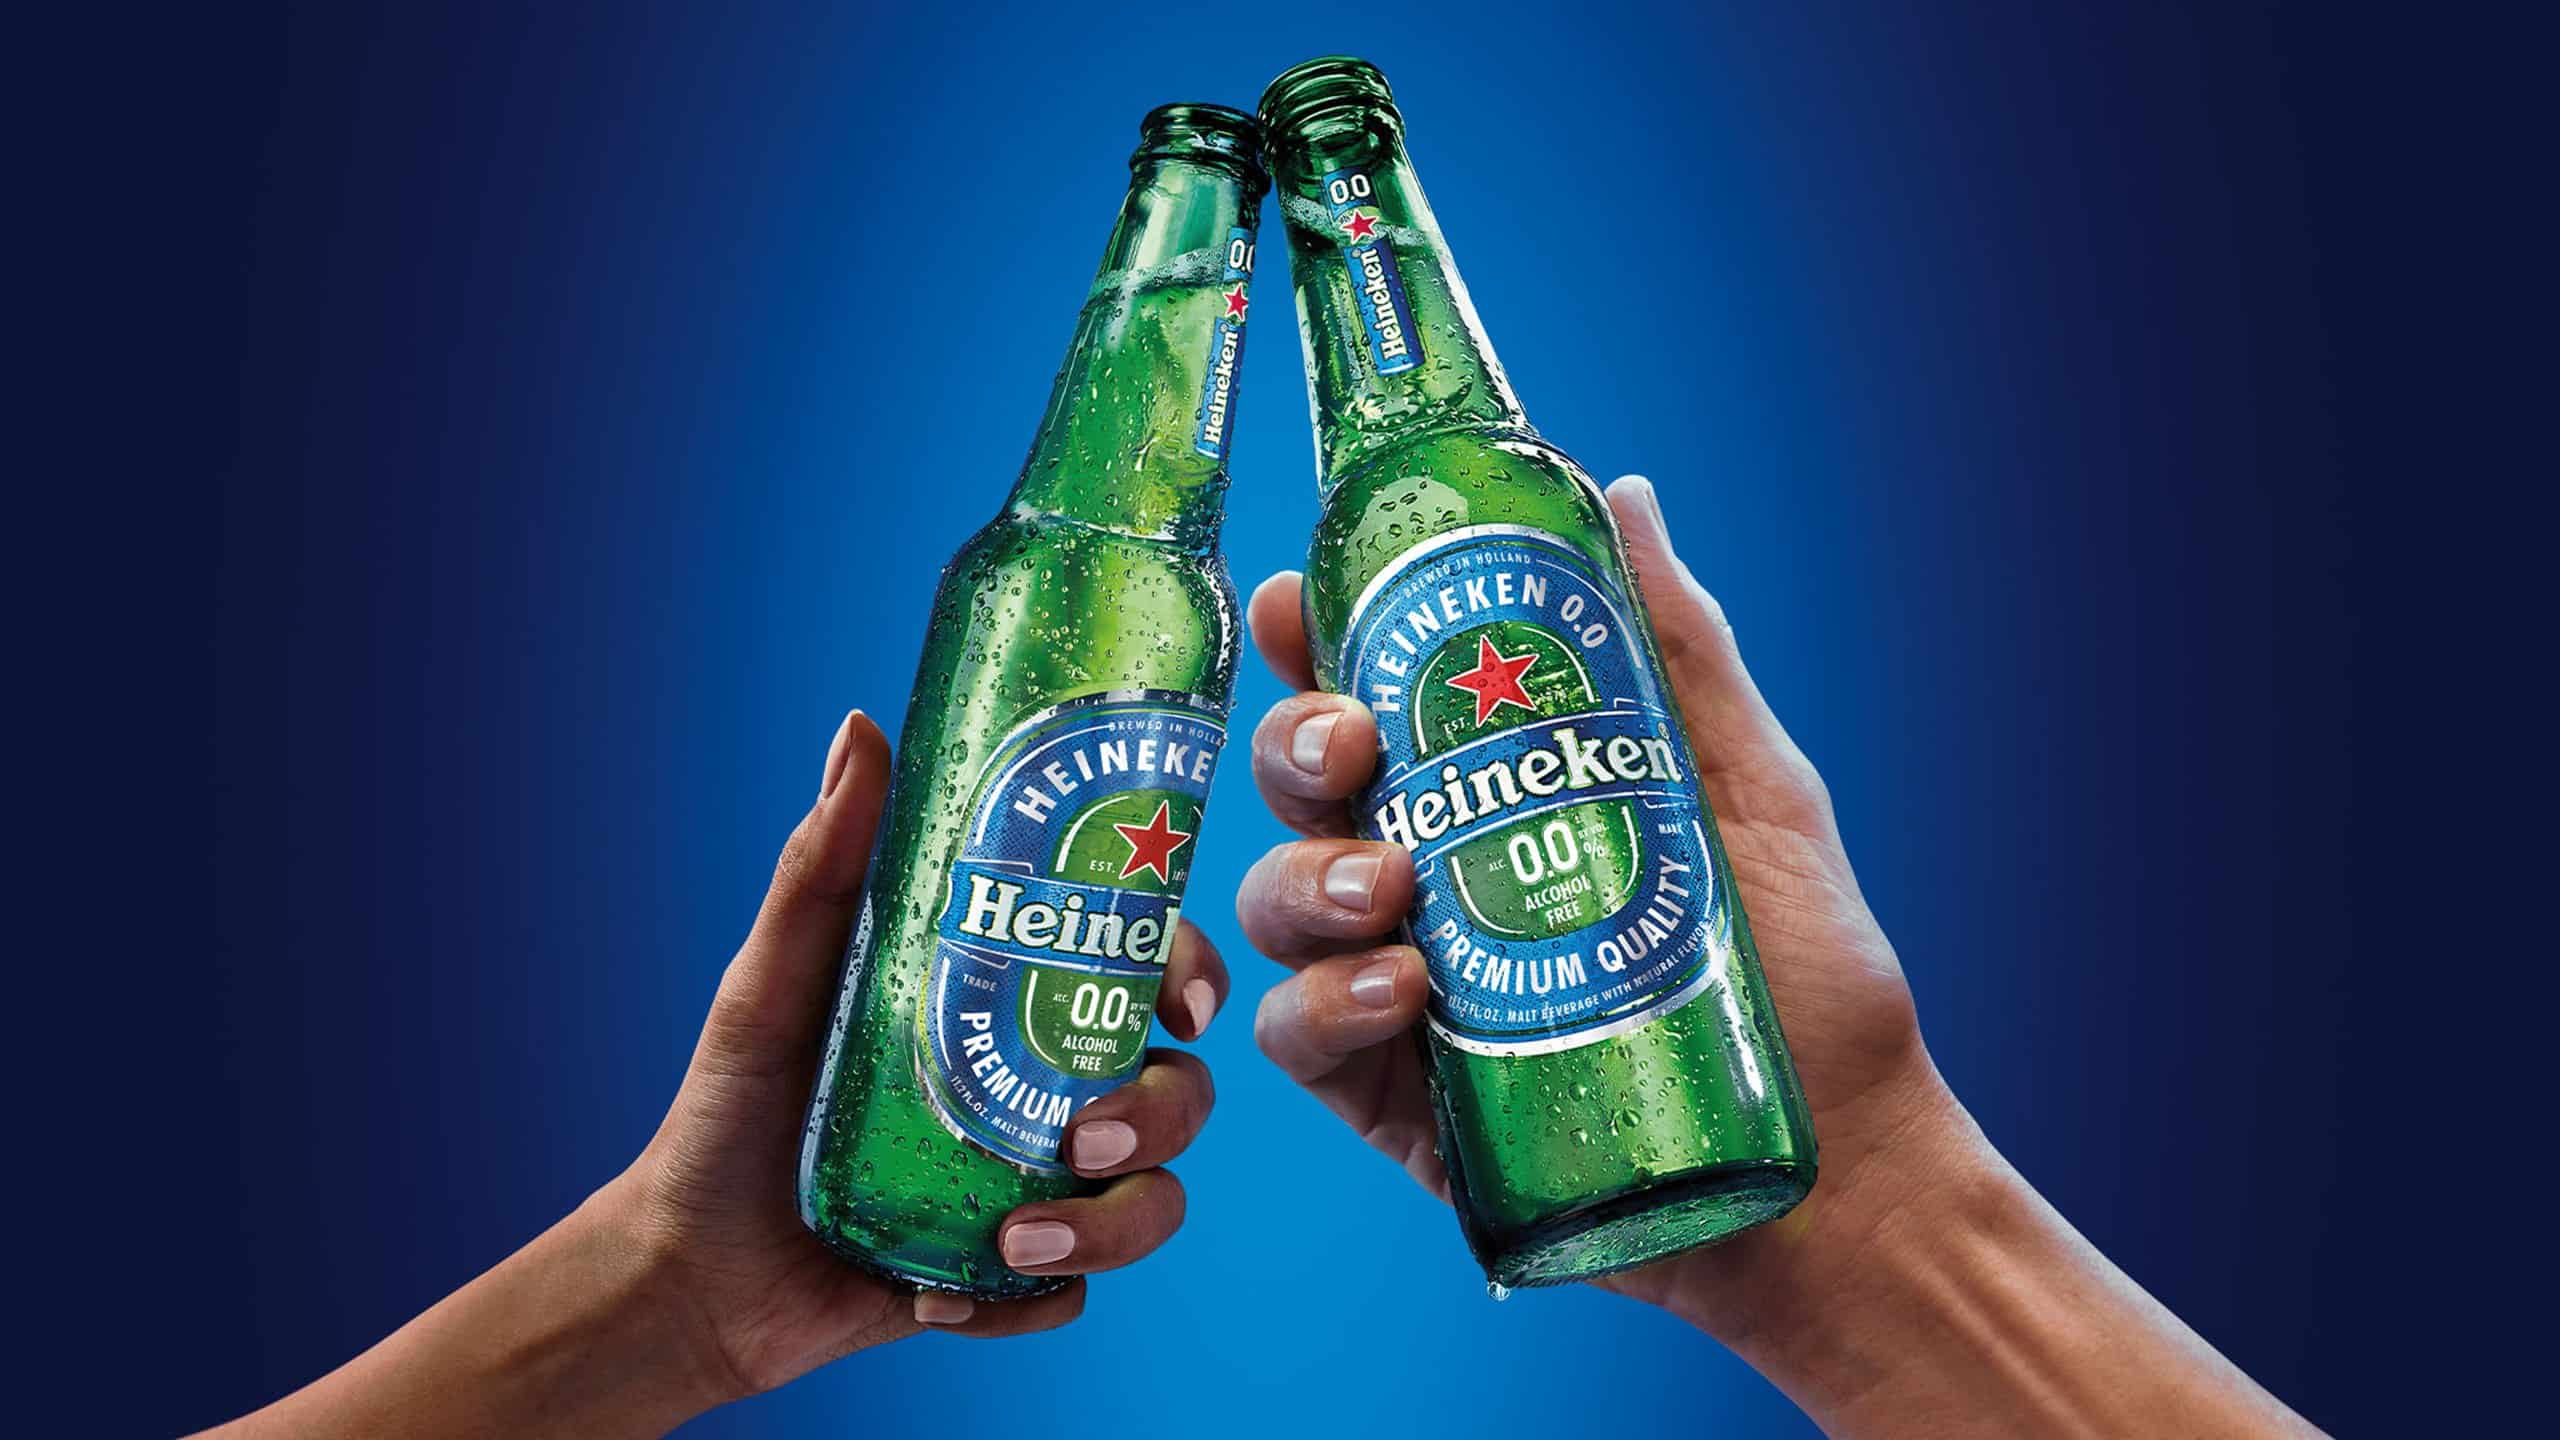 Two hands clanking bottles of heineken zero alcoholic beer